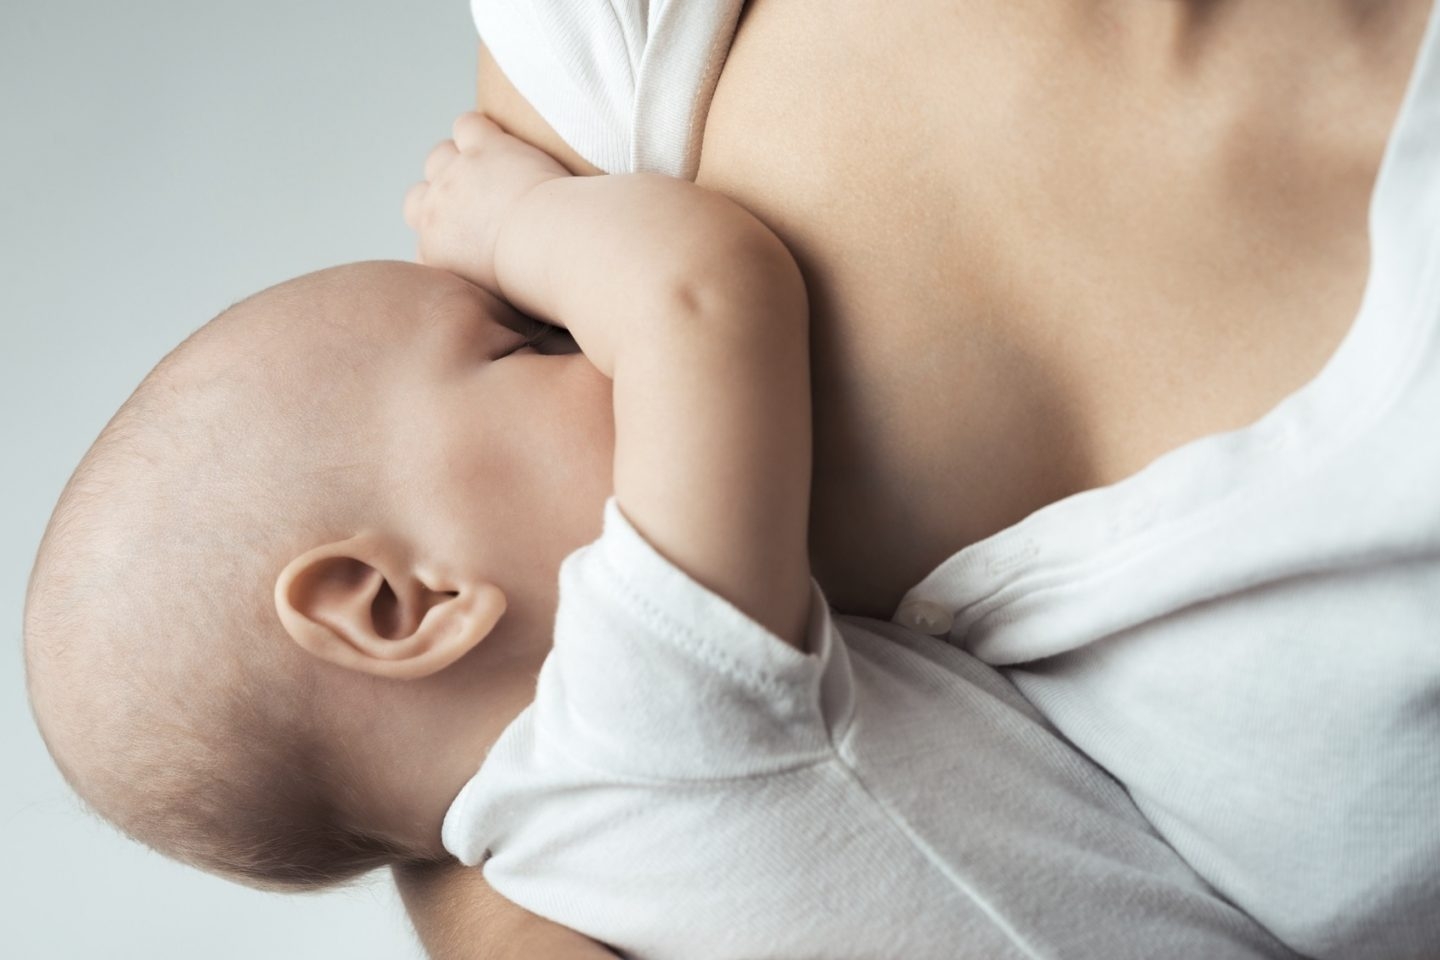 Menú para bebés de 0 a 3 meses - Siempre leche materna o leche de fórmula